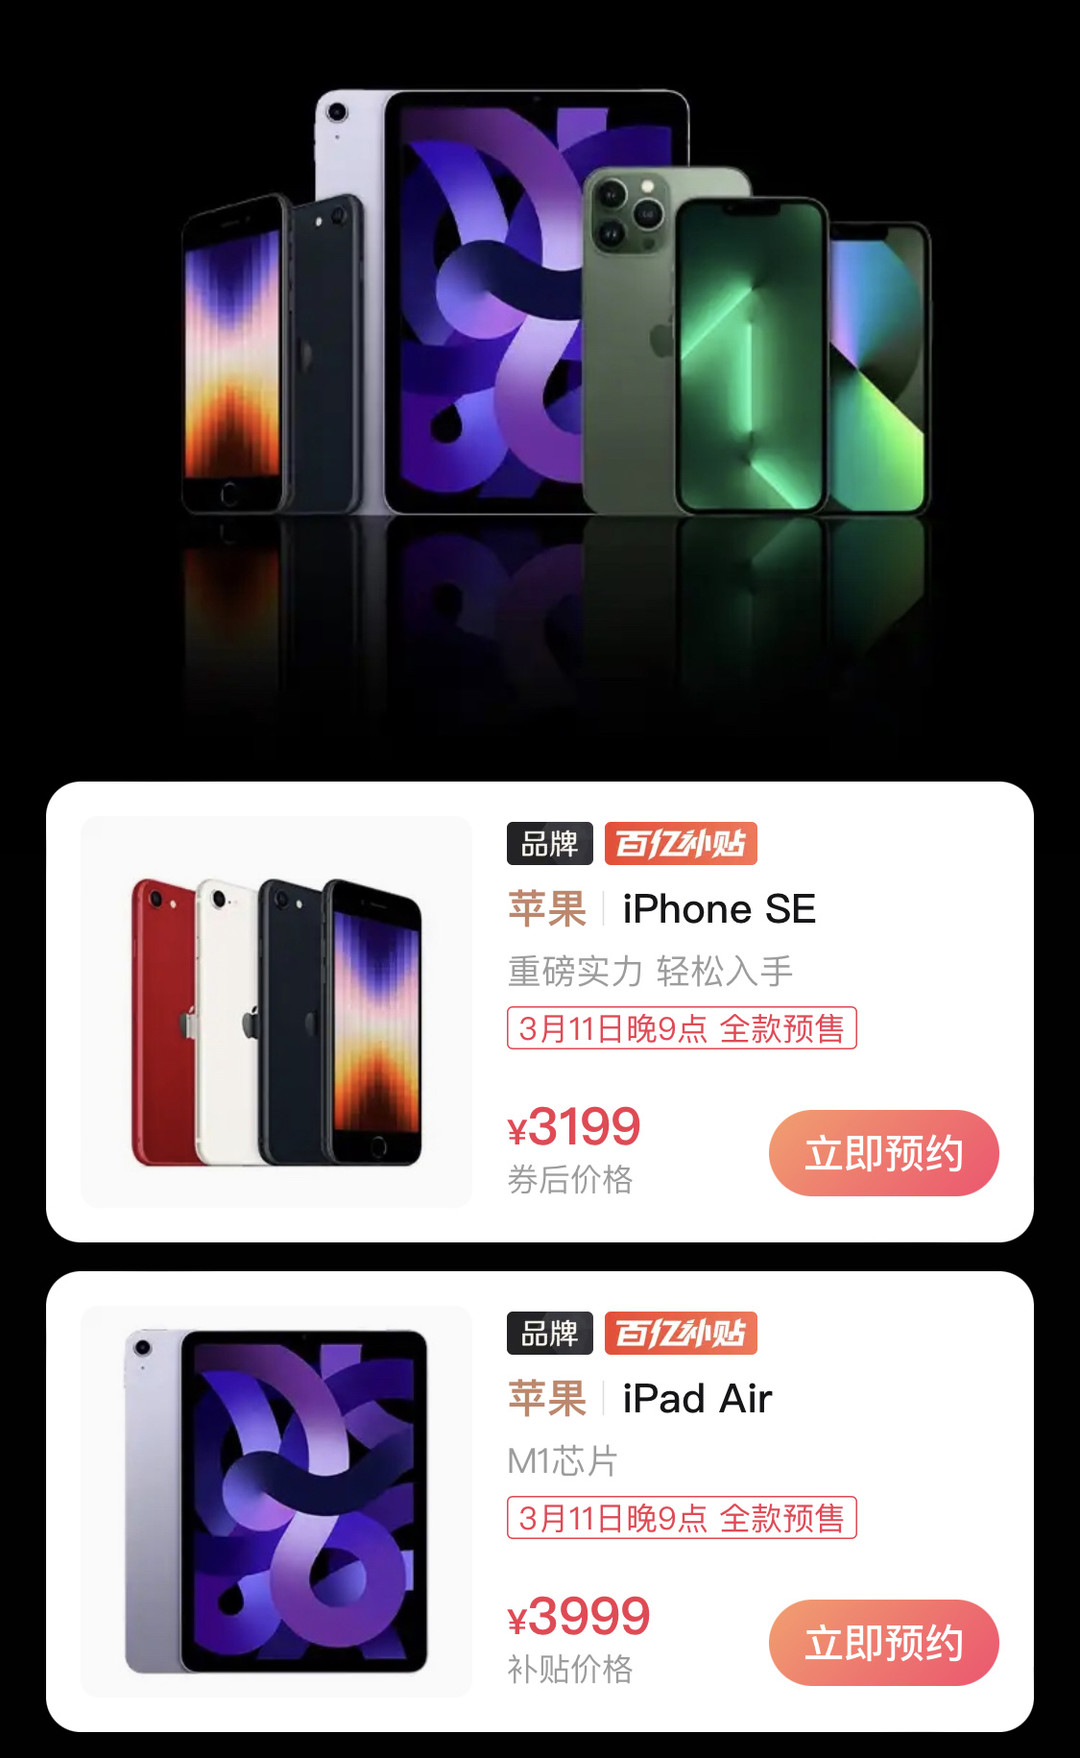 科技东风丨深挖 iPhone SE 3、晚9点苹果新品开始预订、英特尔首款 16 核笔记本CPU